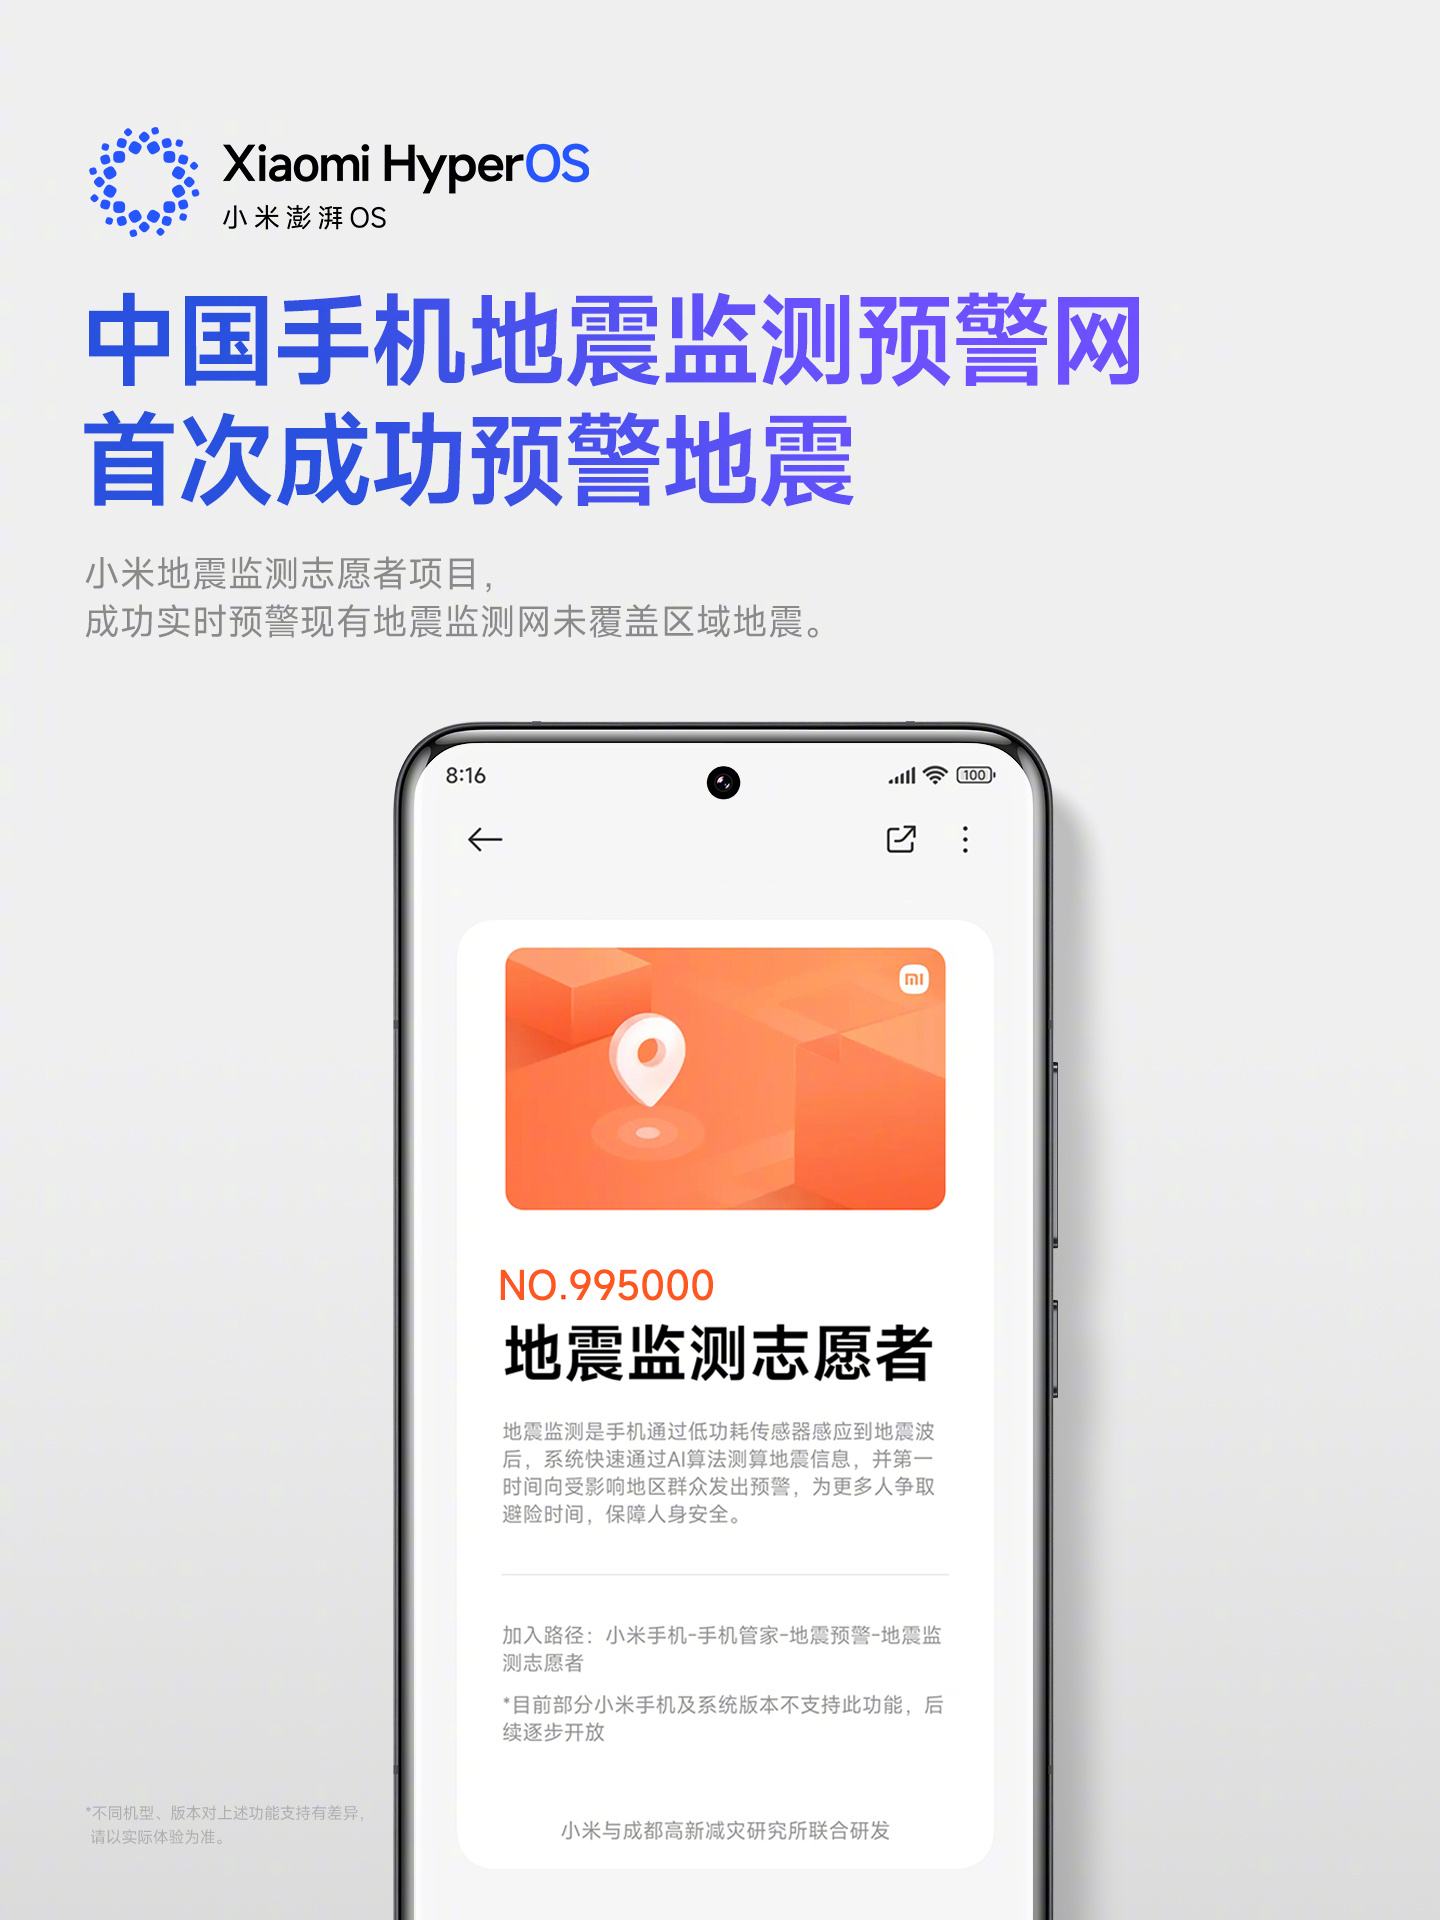 小米澎湃 OS：中国手机地震监测预警网首次成功预警地震